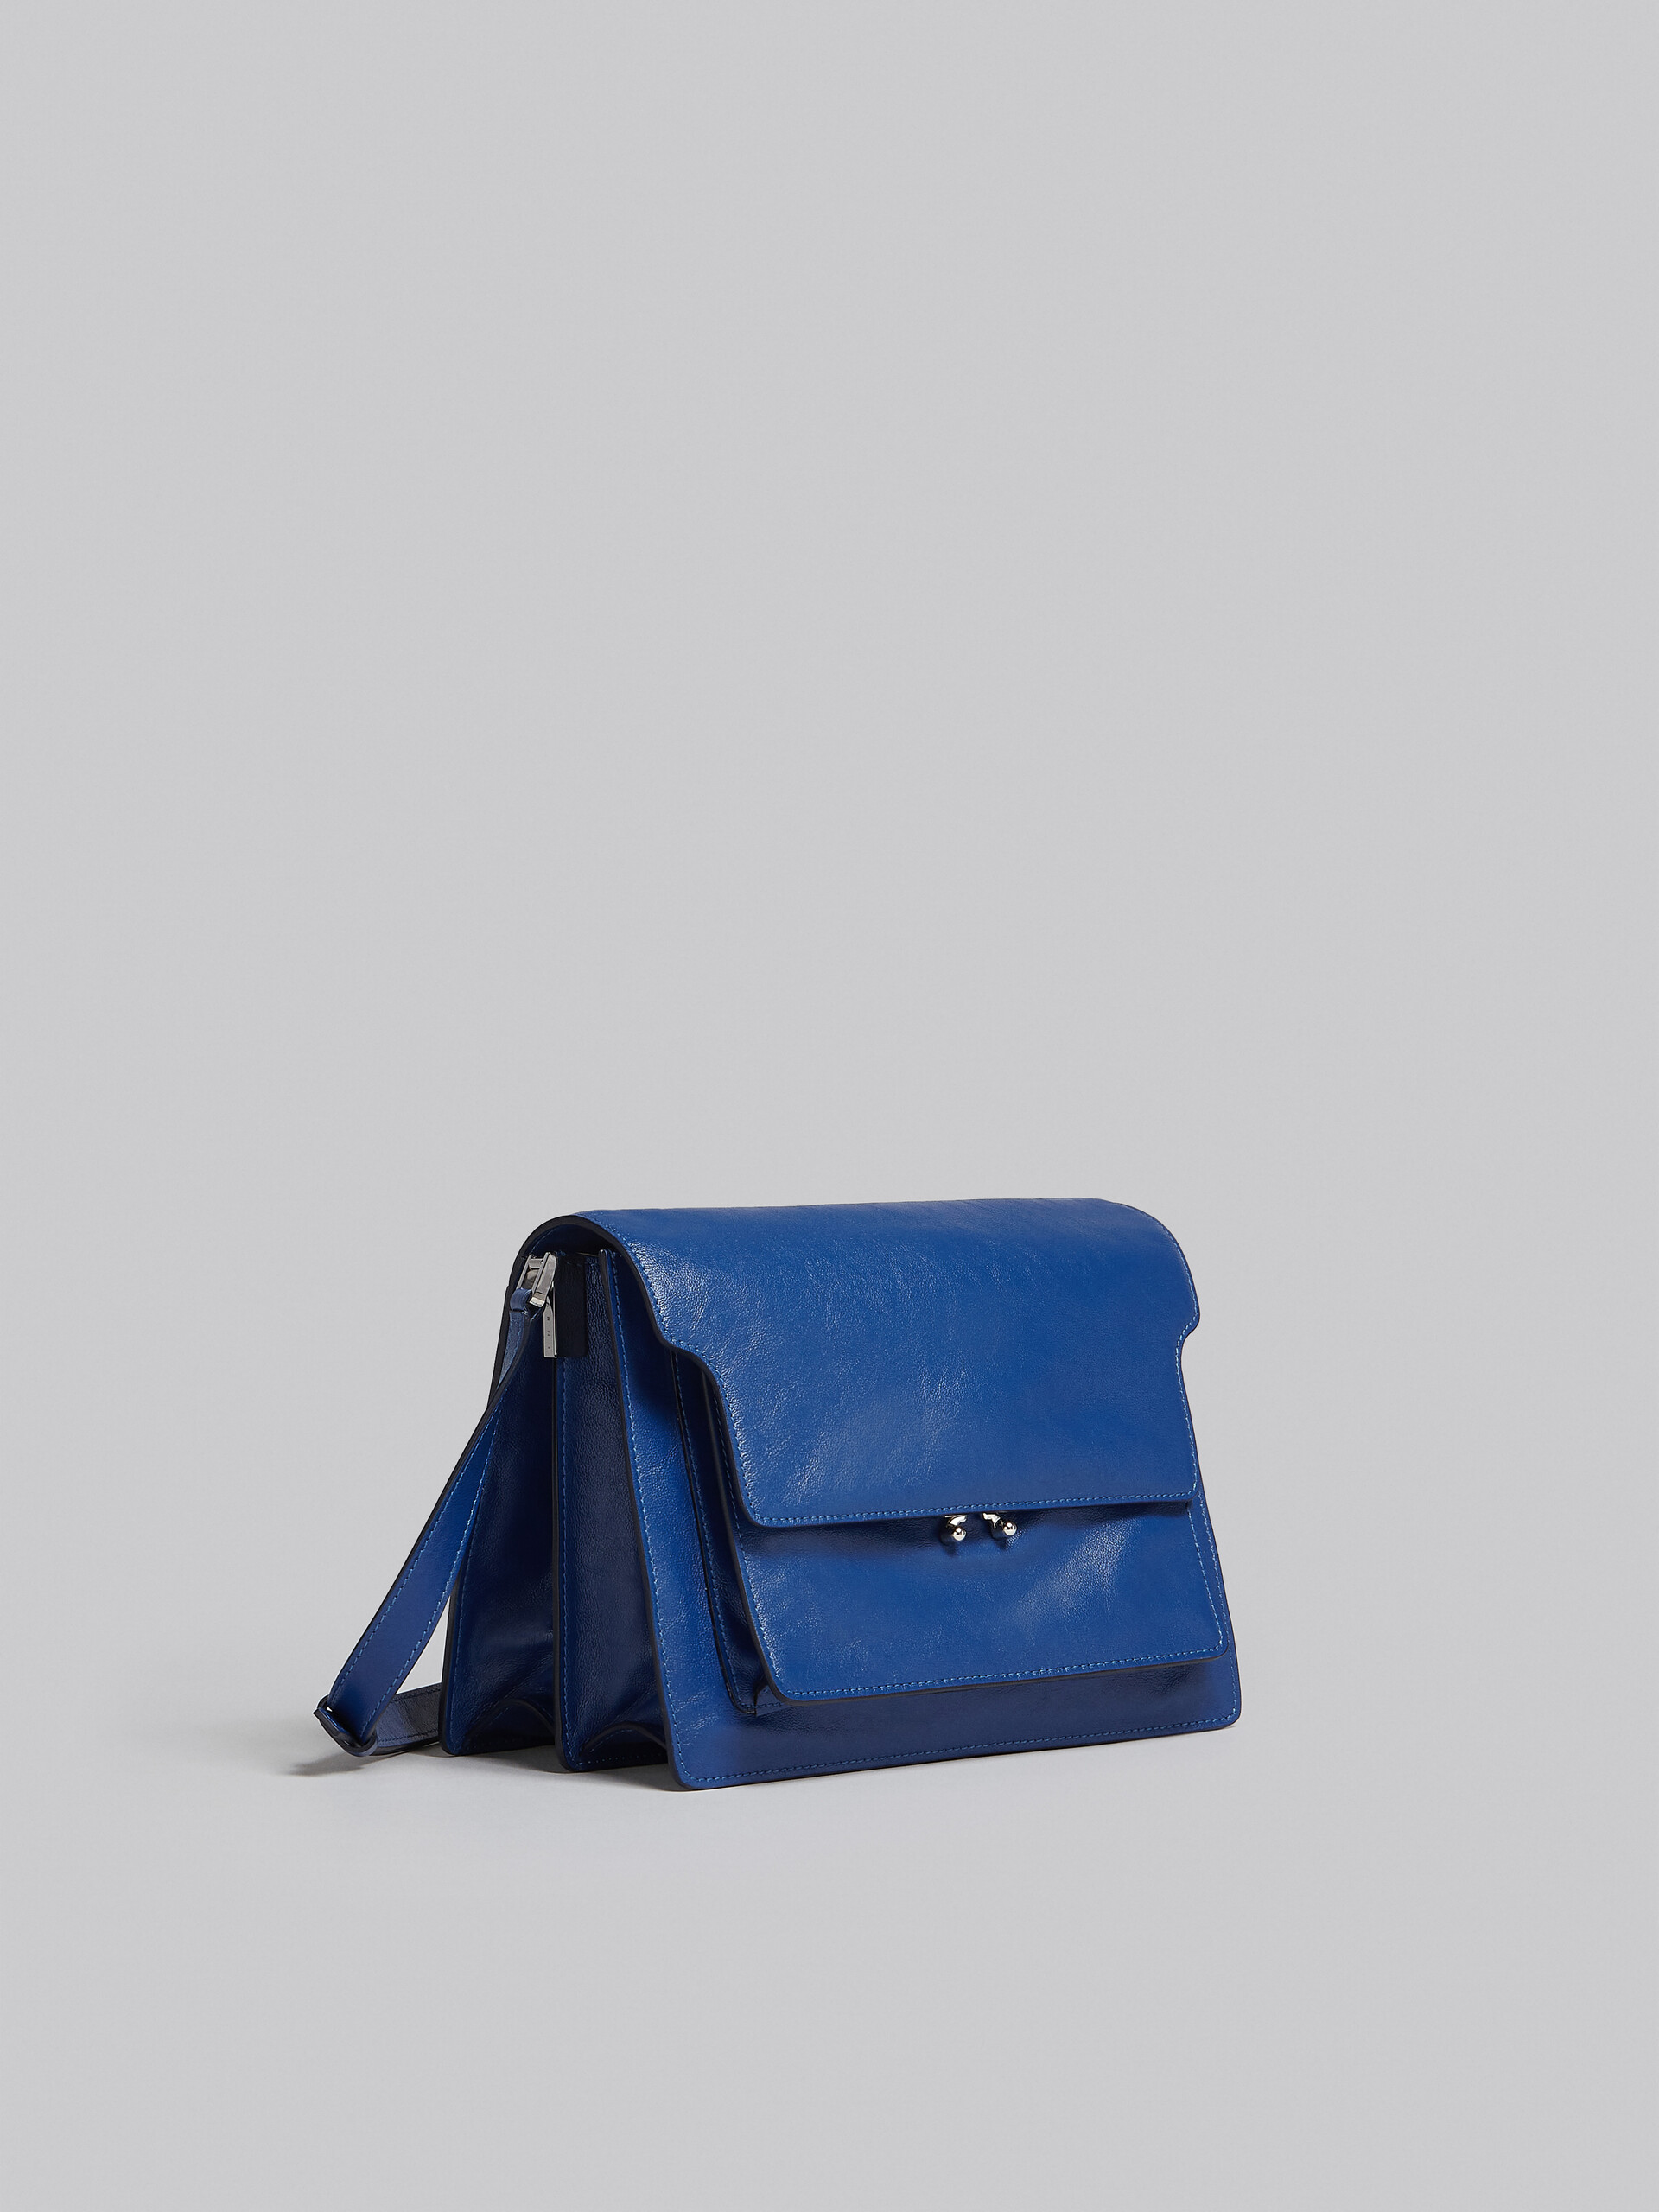 Trunk Soft Large Bag in blue leather - Shoulder Bag - Image 6